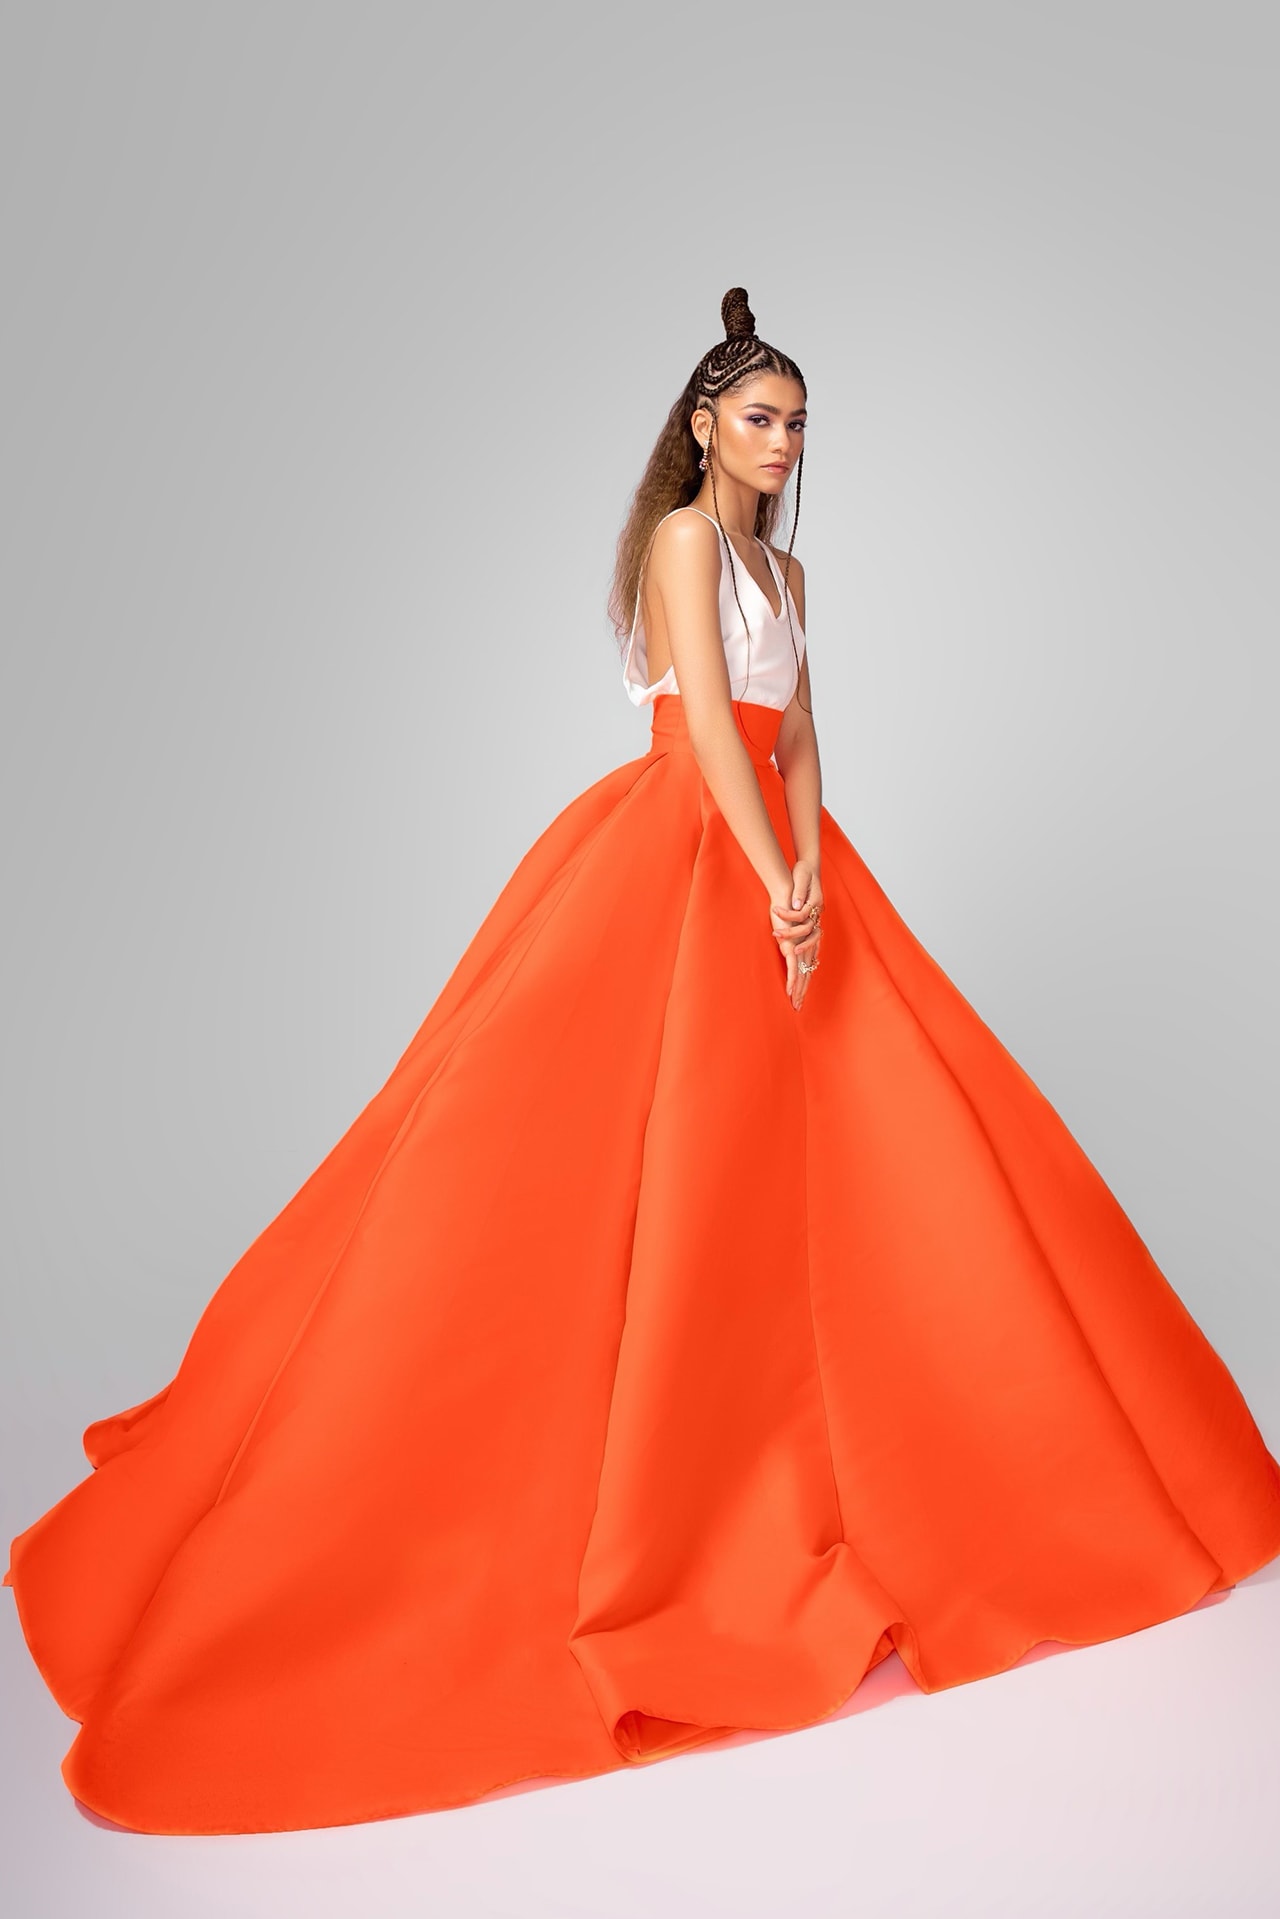 zendaya 2021 critics choice awards red carpet valentino haute couture dress skirt neon orange white hairstyle bulgari jewelry